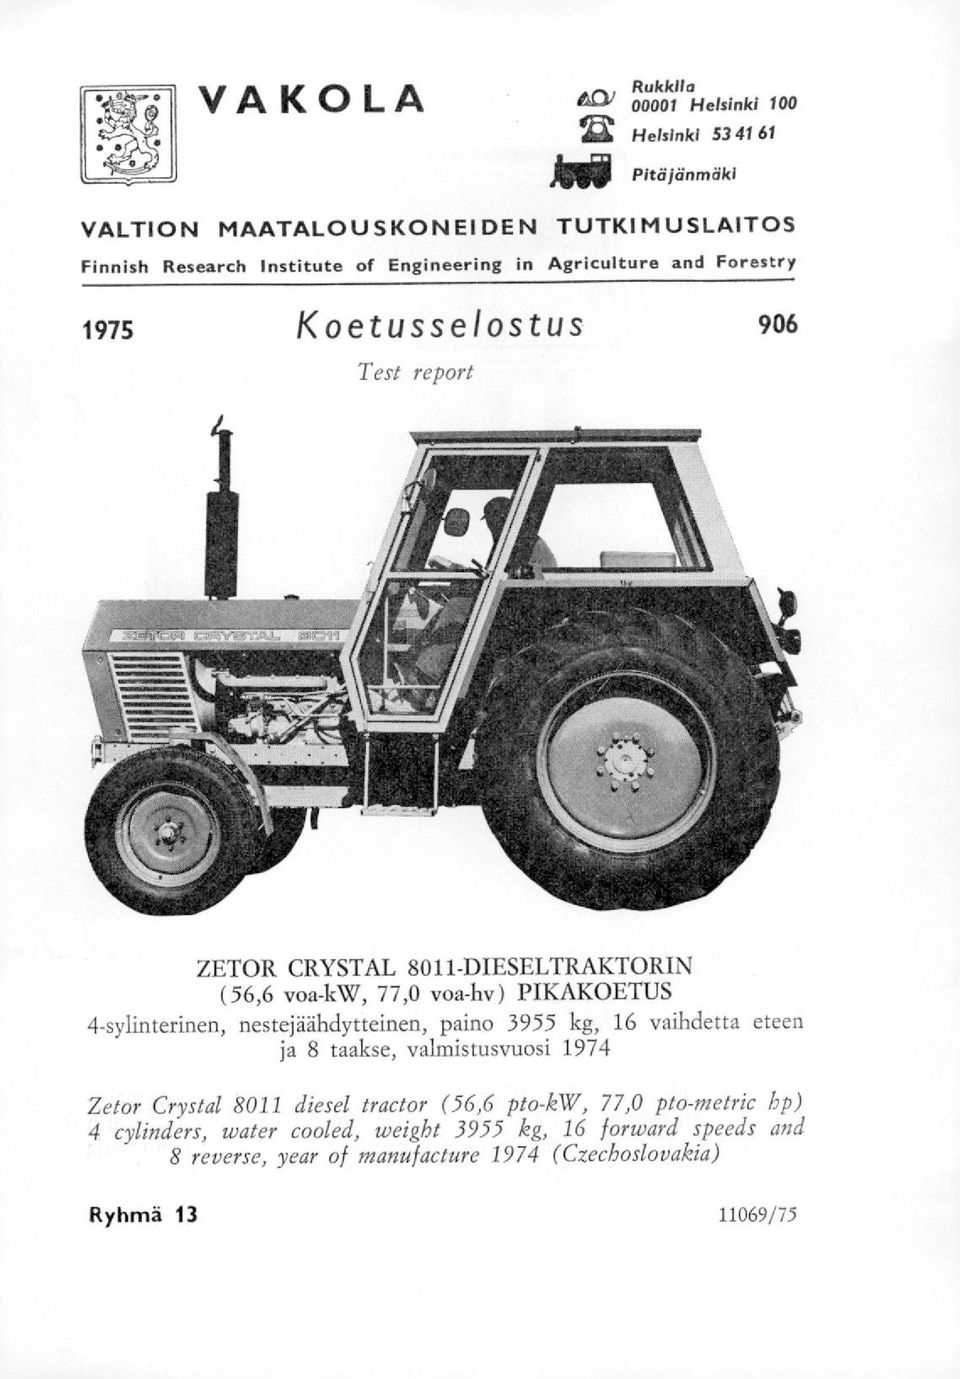 4-sylinterinen, nestejaahdytteinen, paino 3955 kg, 16 vaihdetta eteen ja 8 taakse, valmistusvuosi 1974 Zetor Crystal 8011 diesel tractor (56,6